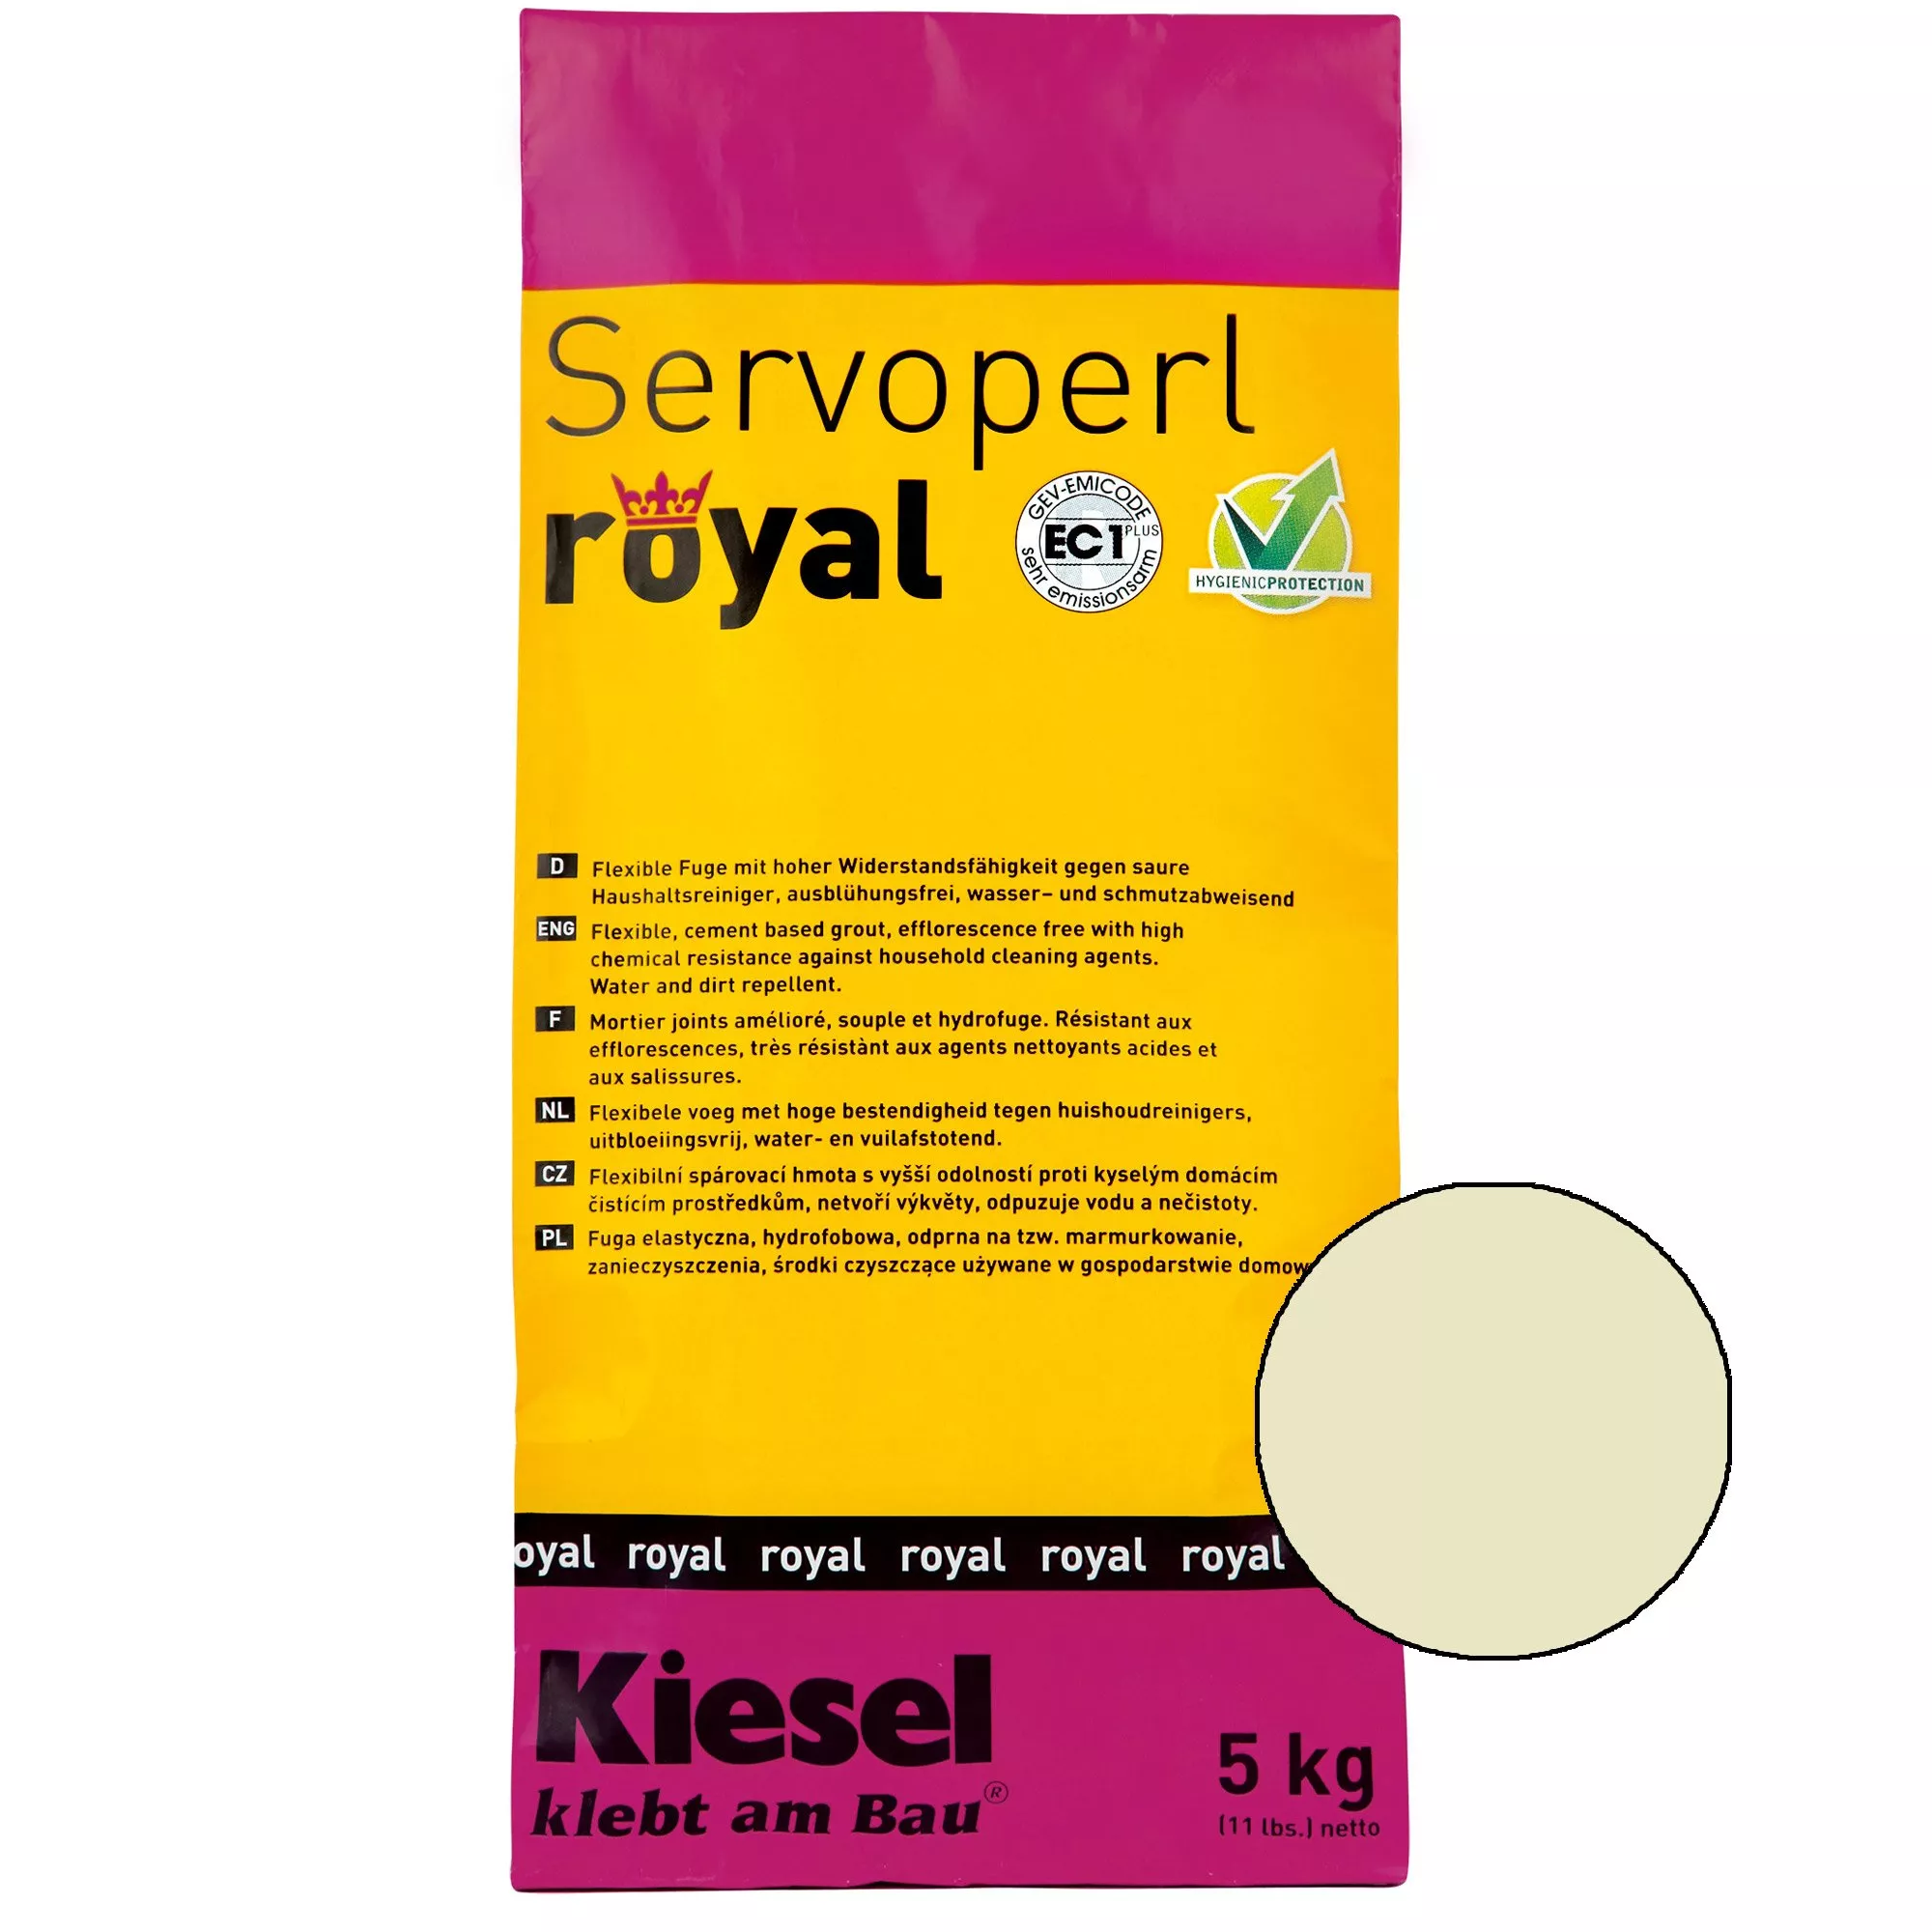 Kiesel Servoperl royal - Flexible, wasser- und schmutzabweisende Fuge (5KG Jasmin)